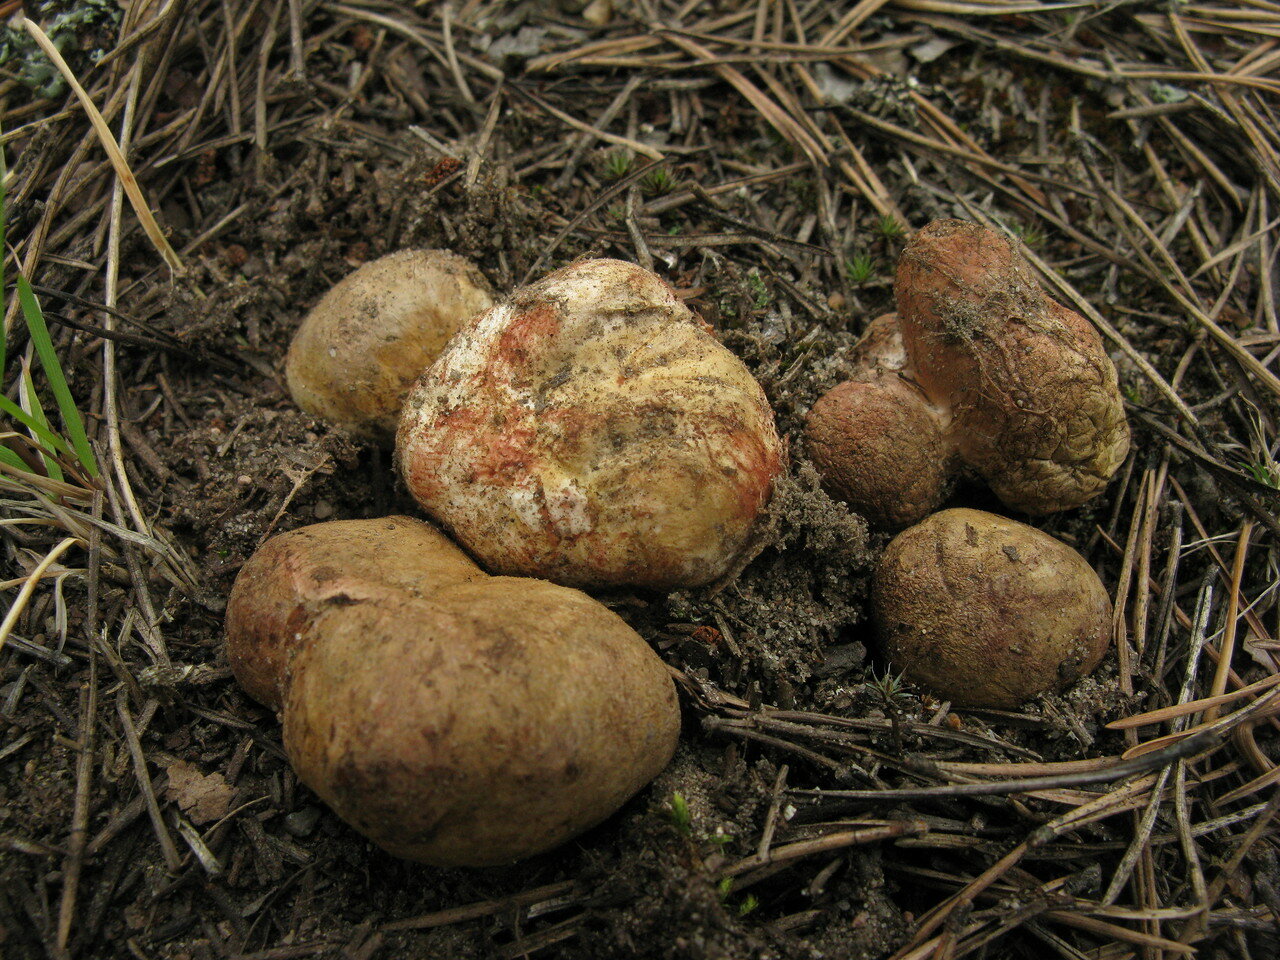 Ризопогон обычный (rhizopogon vulgaris). грибной гиф: почему гриб лучше срезать, а не рвать с корнем как называется часть гриба под землей